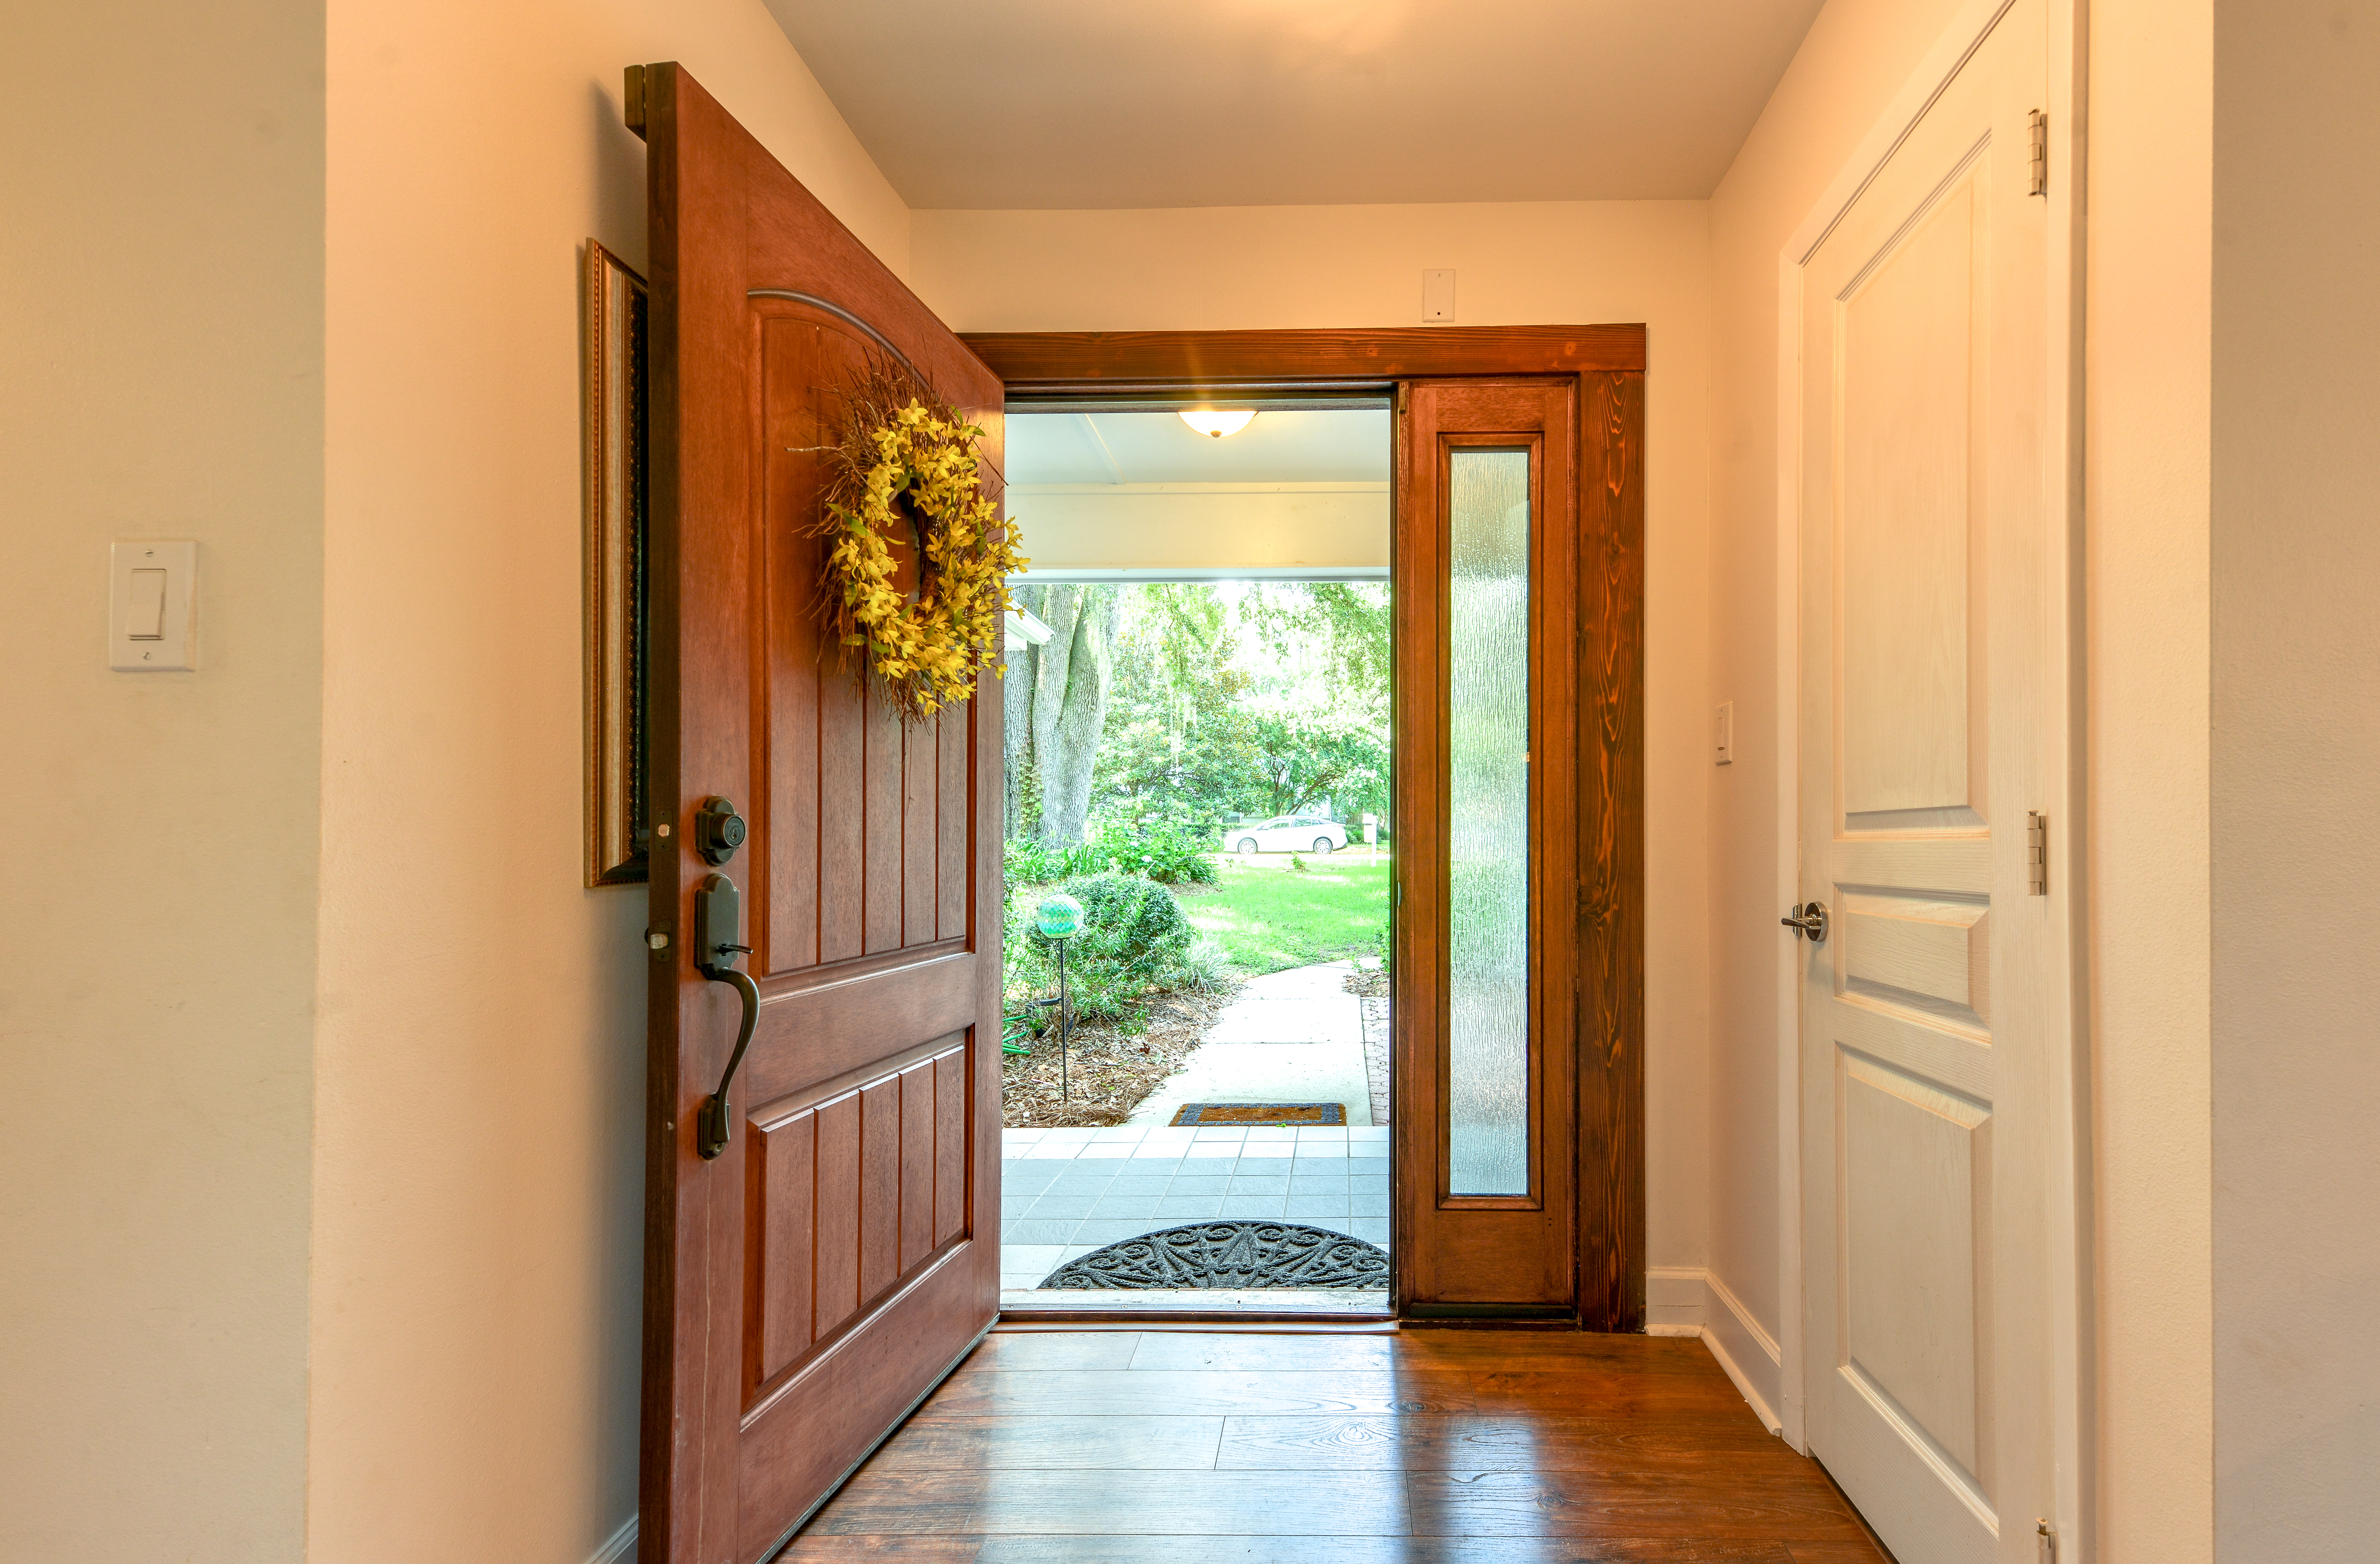 Eine offene Haustür mit einem Kranz darüber | Quelle: Shutterstock